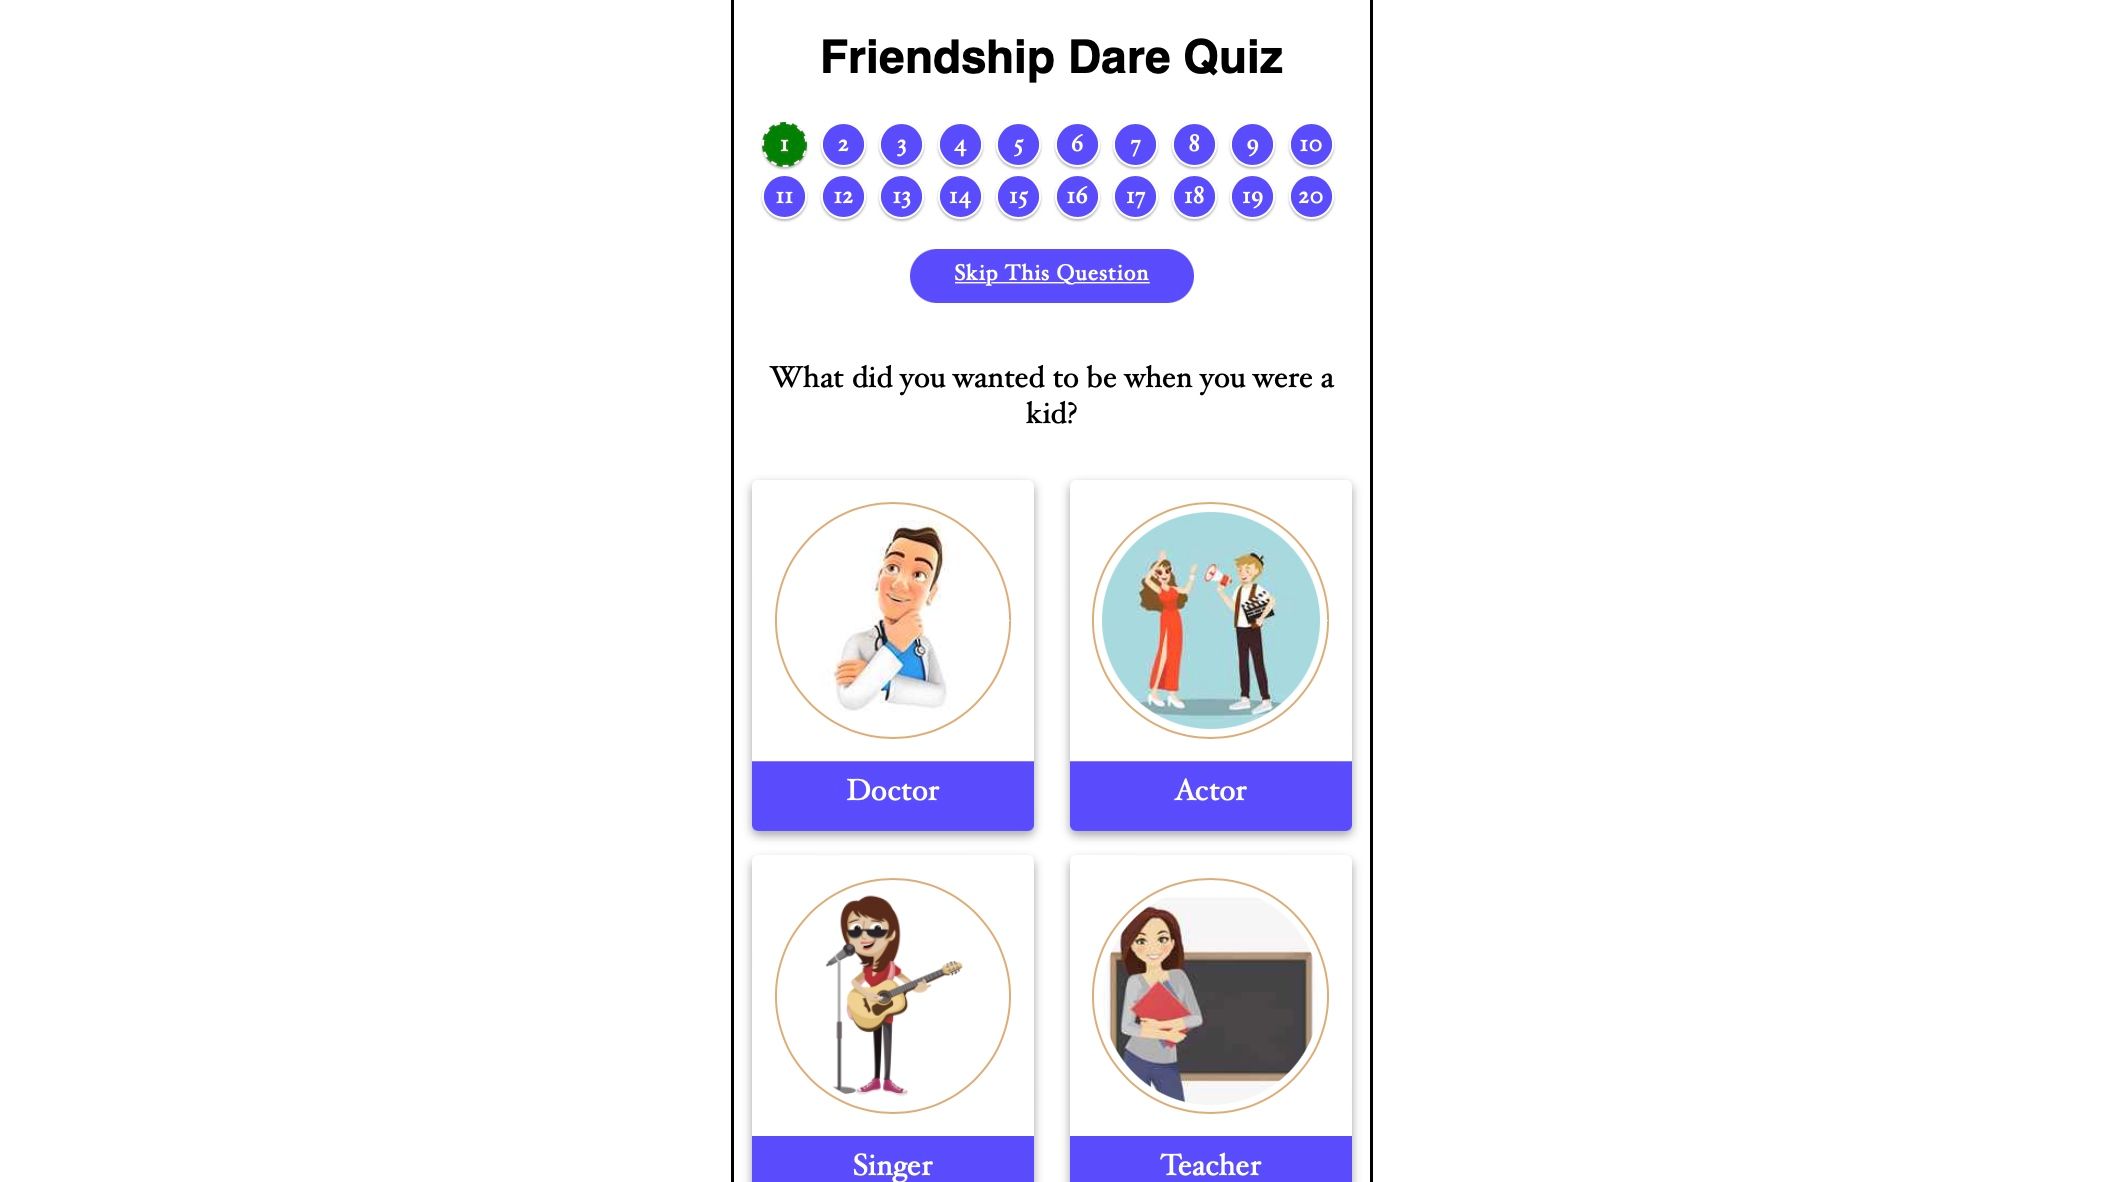 buddy dare website friendship quiz